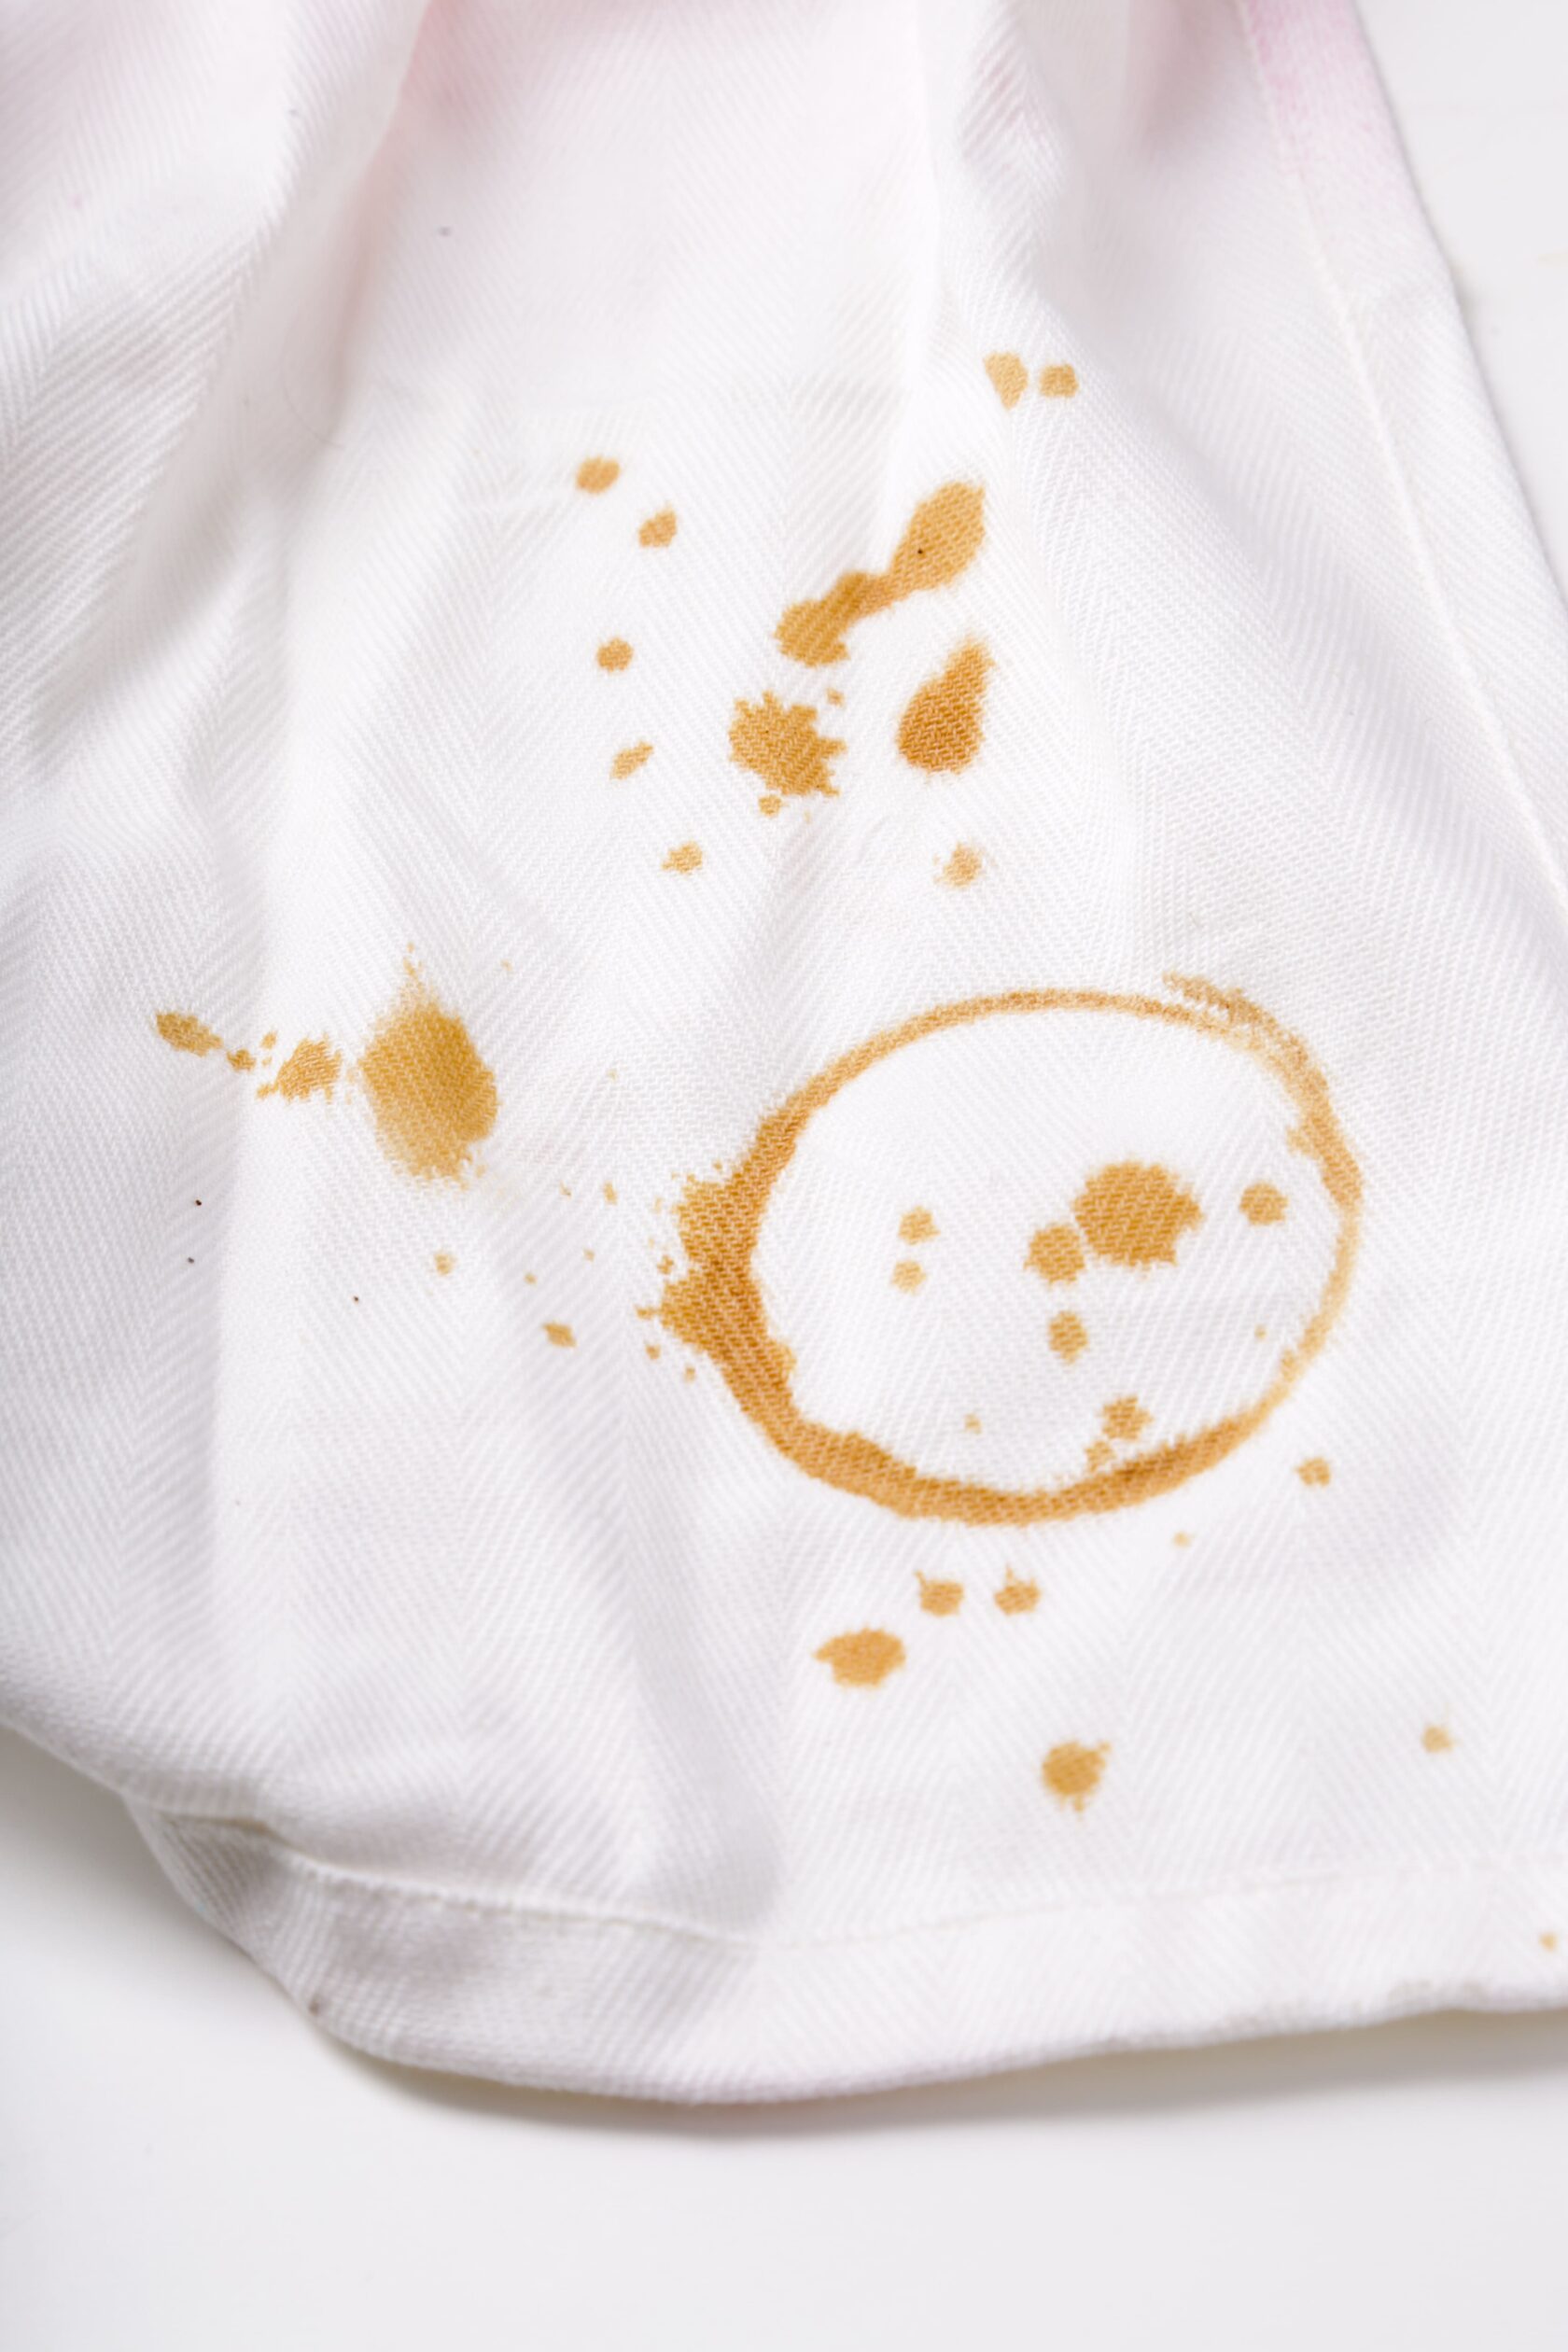 удалить пятно от кофе с одежды